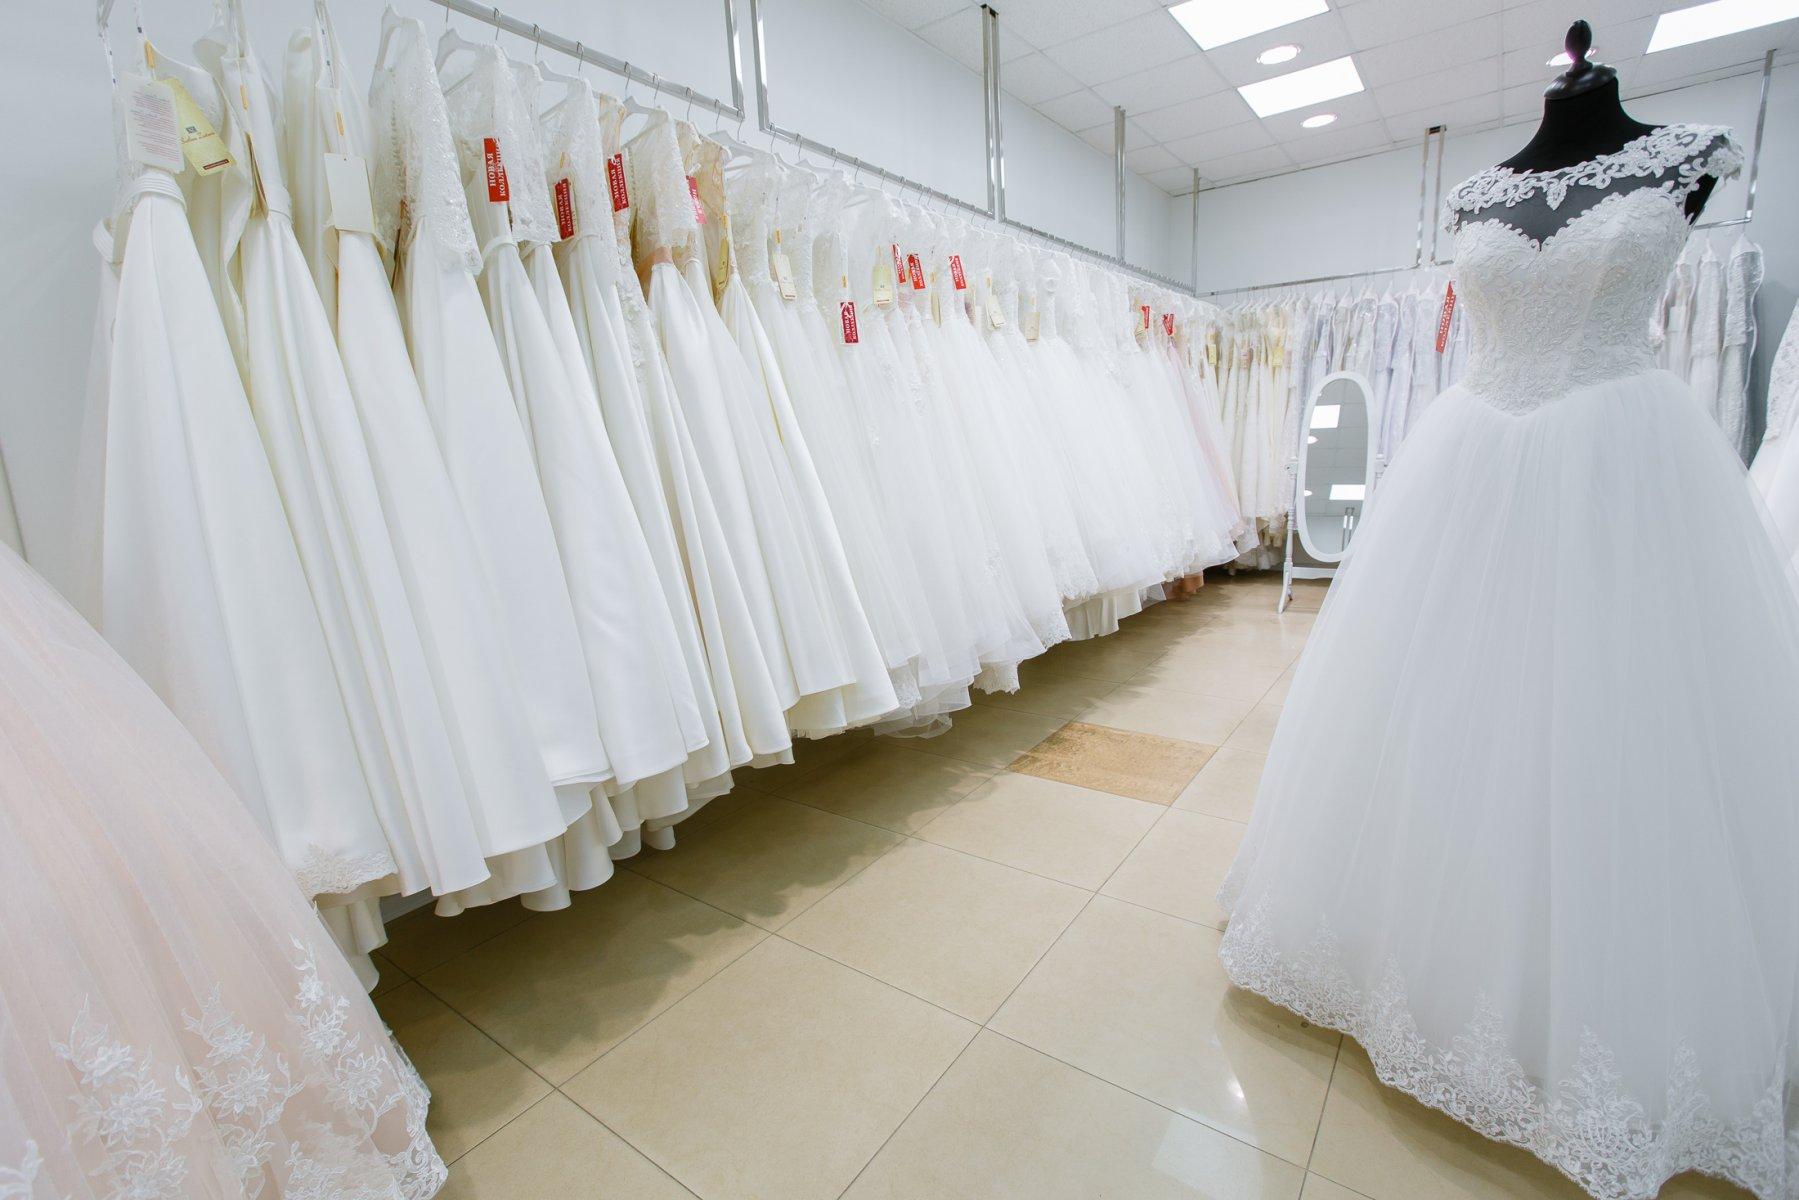 Свадебные платья в магазине